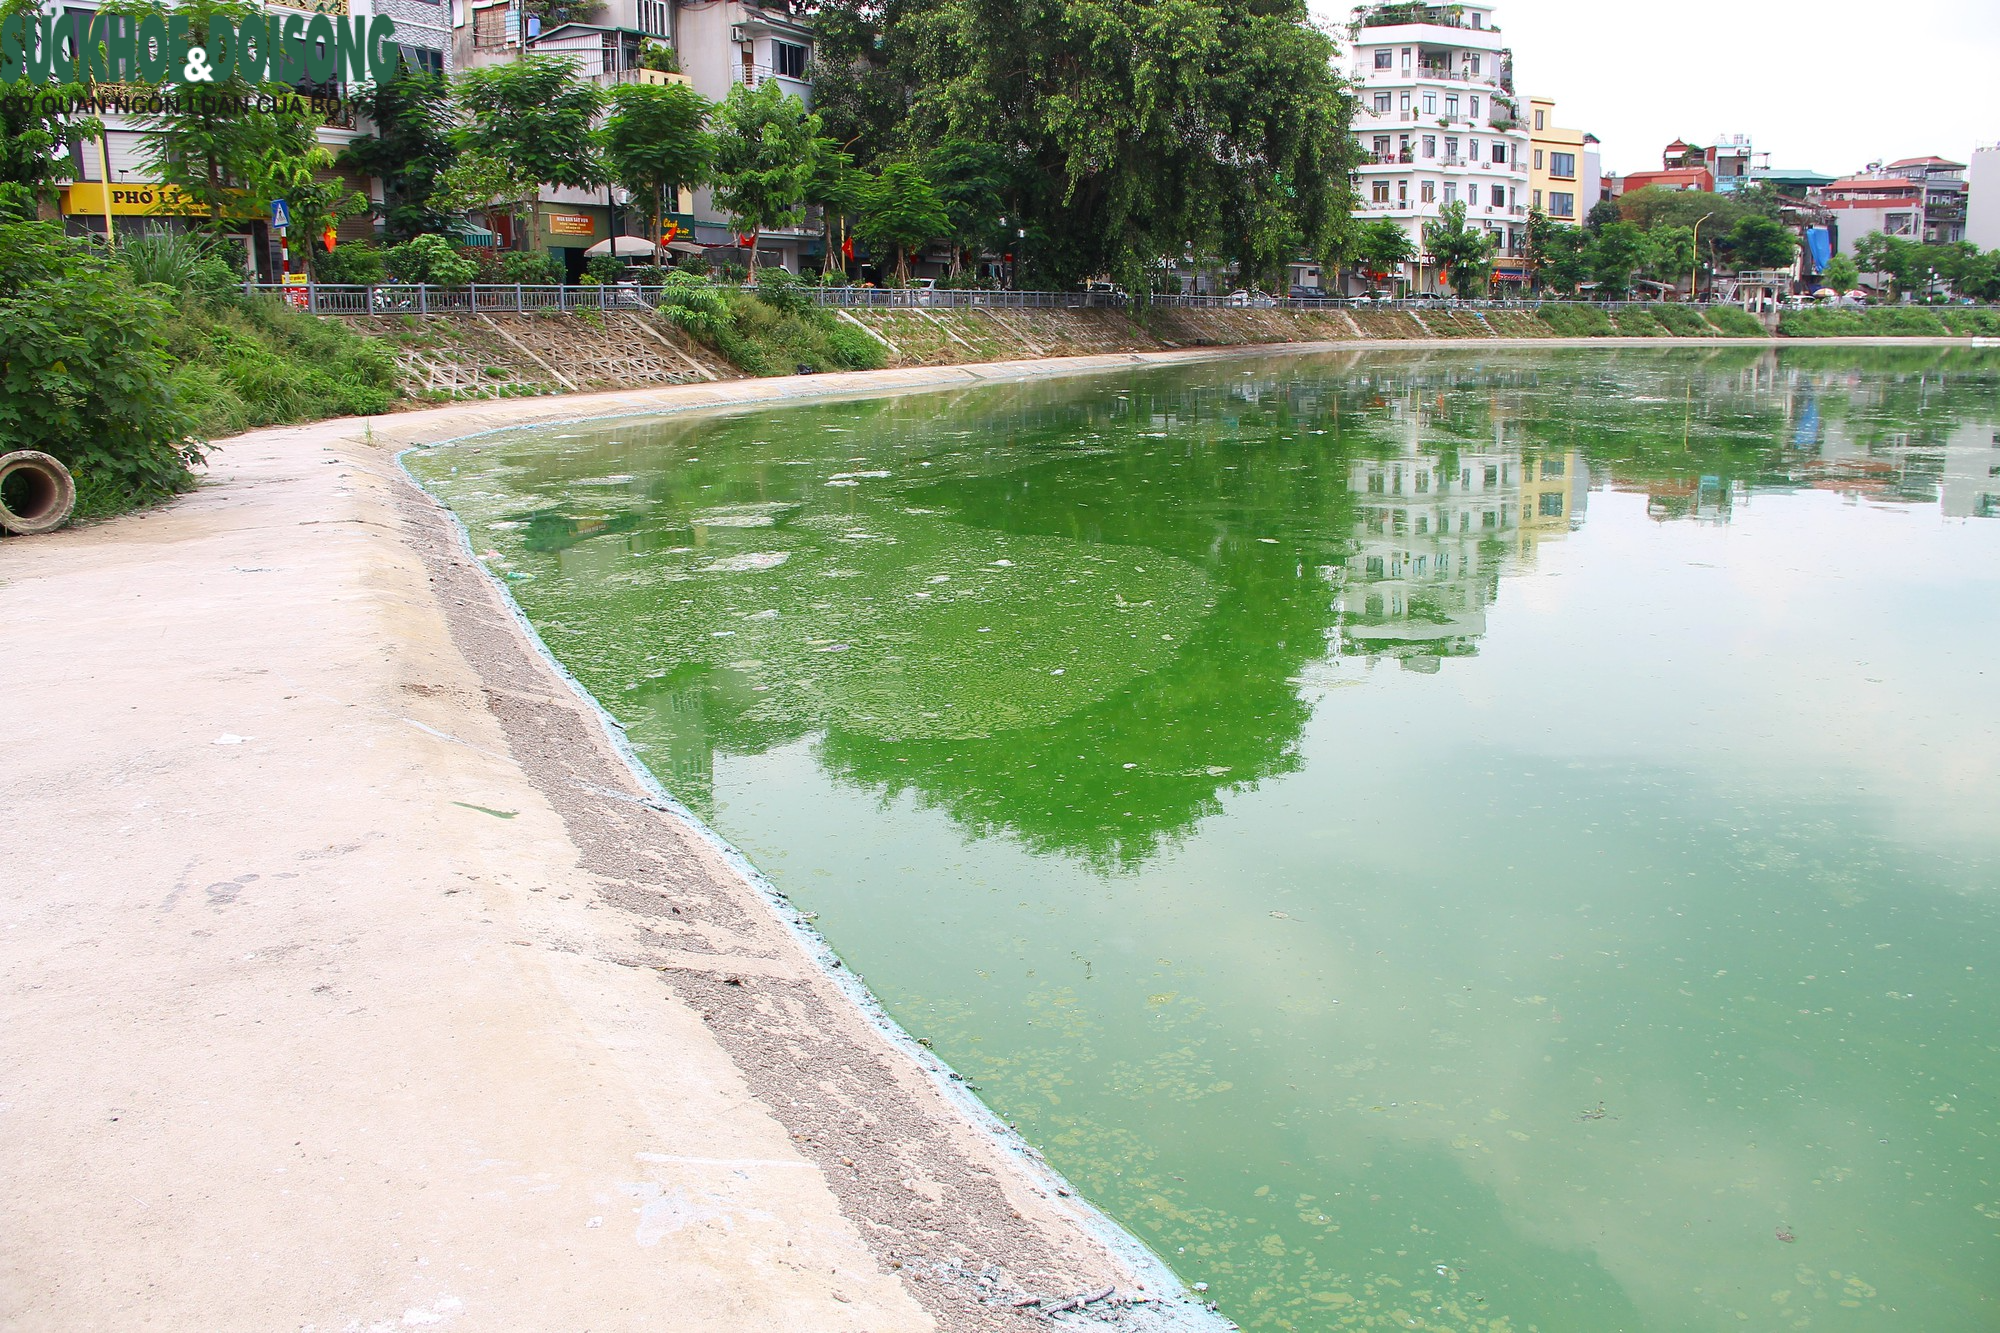 Hồ nước tại trung tâm Hà Nội ô nhiễm, mặt hồ nổi mảng bám, nước bốc mùi - Ảnh 9.